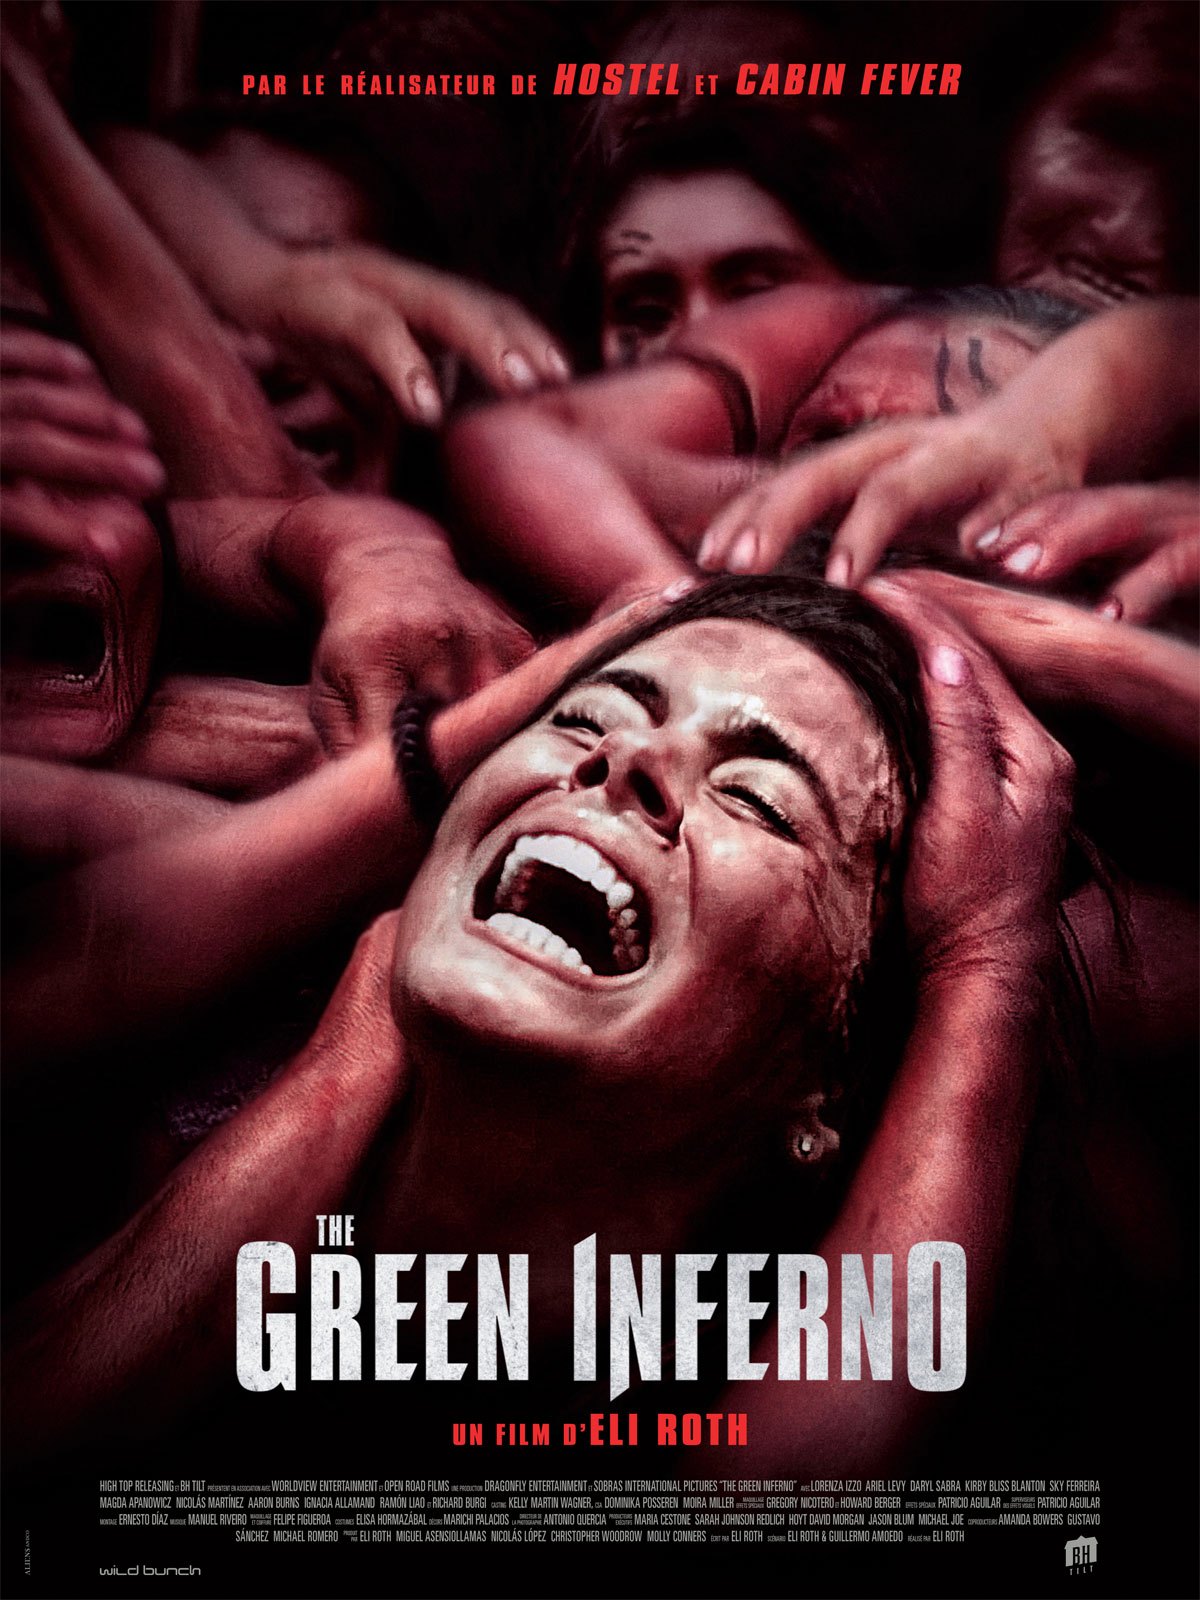 [CRITIQUE E-CINEMA] THE GREEN INFERNO